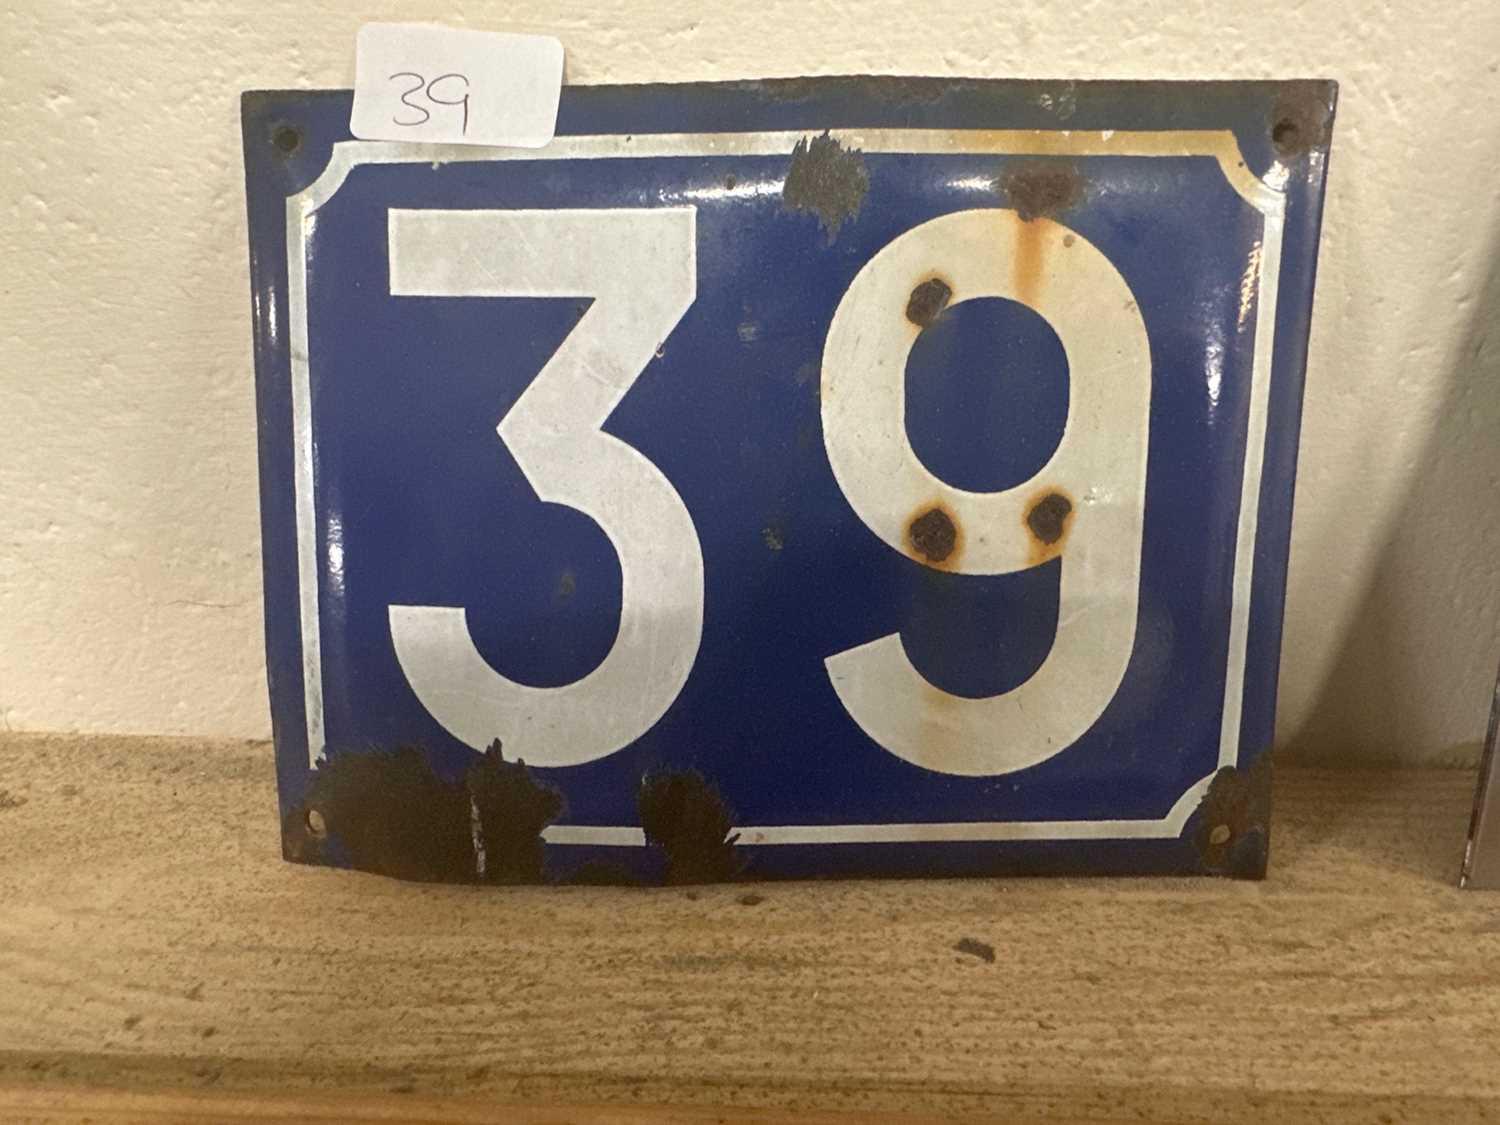 Lot 39 - Enamelled door number "39"